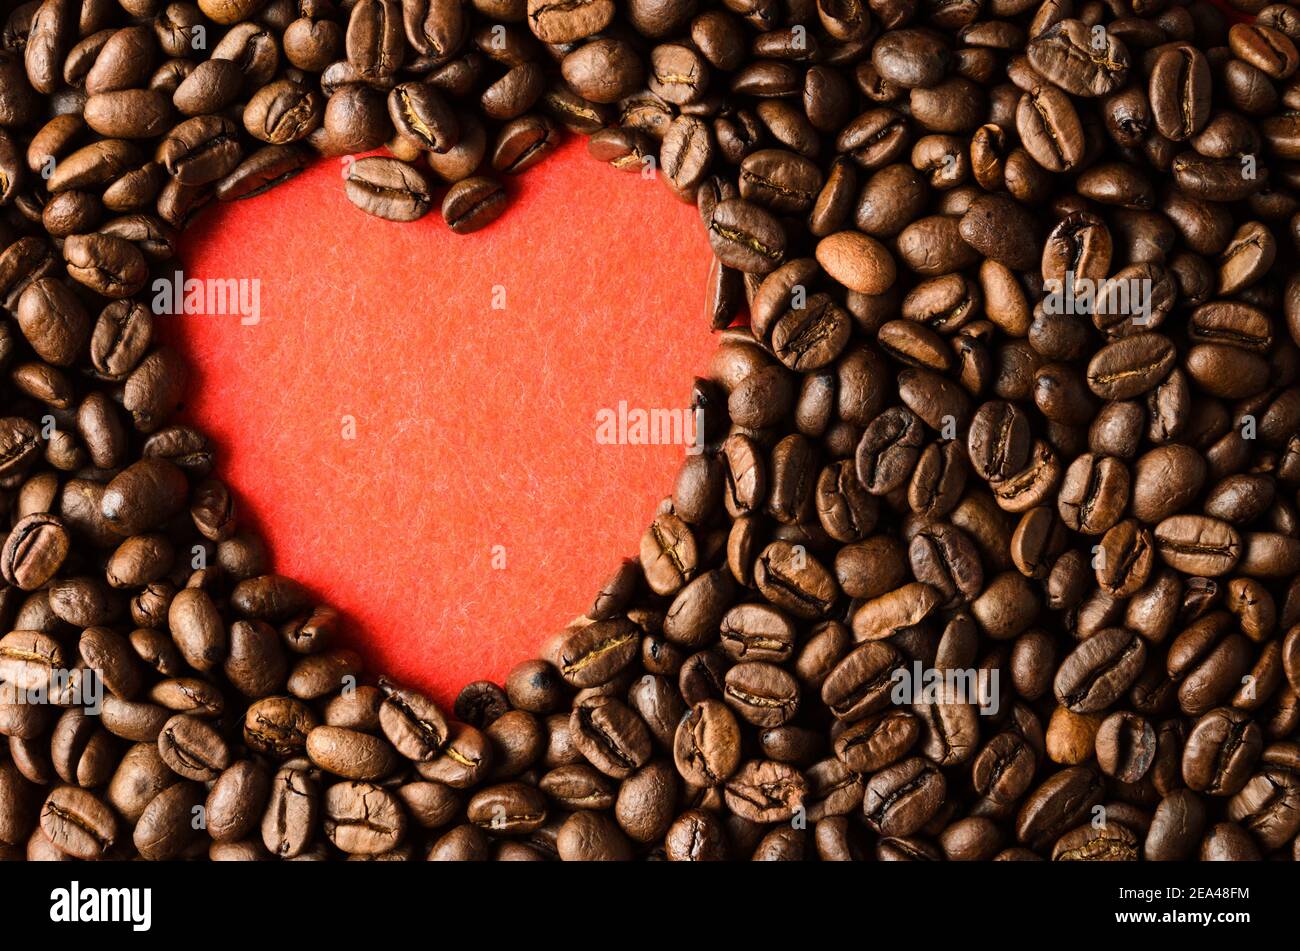 Geröstete Kaffeebohnen auf einem roten strukturierten Hintergrund in Form eines Herzens. Stockfoto